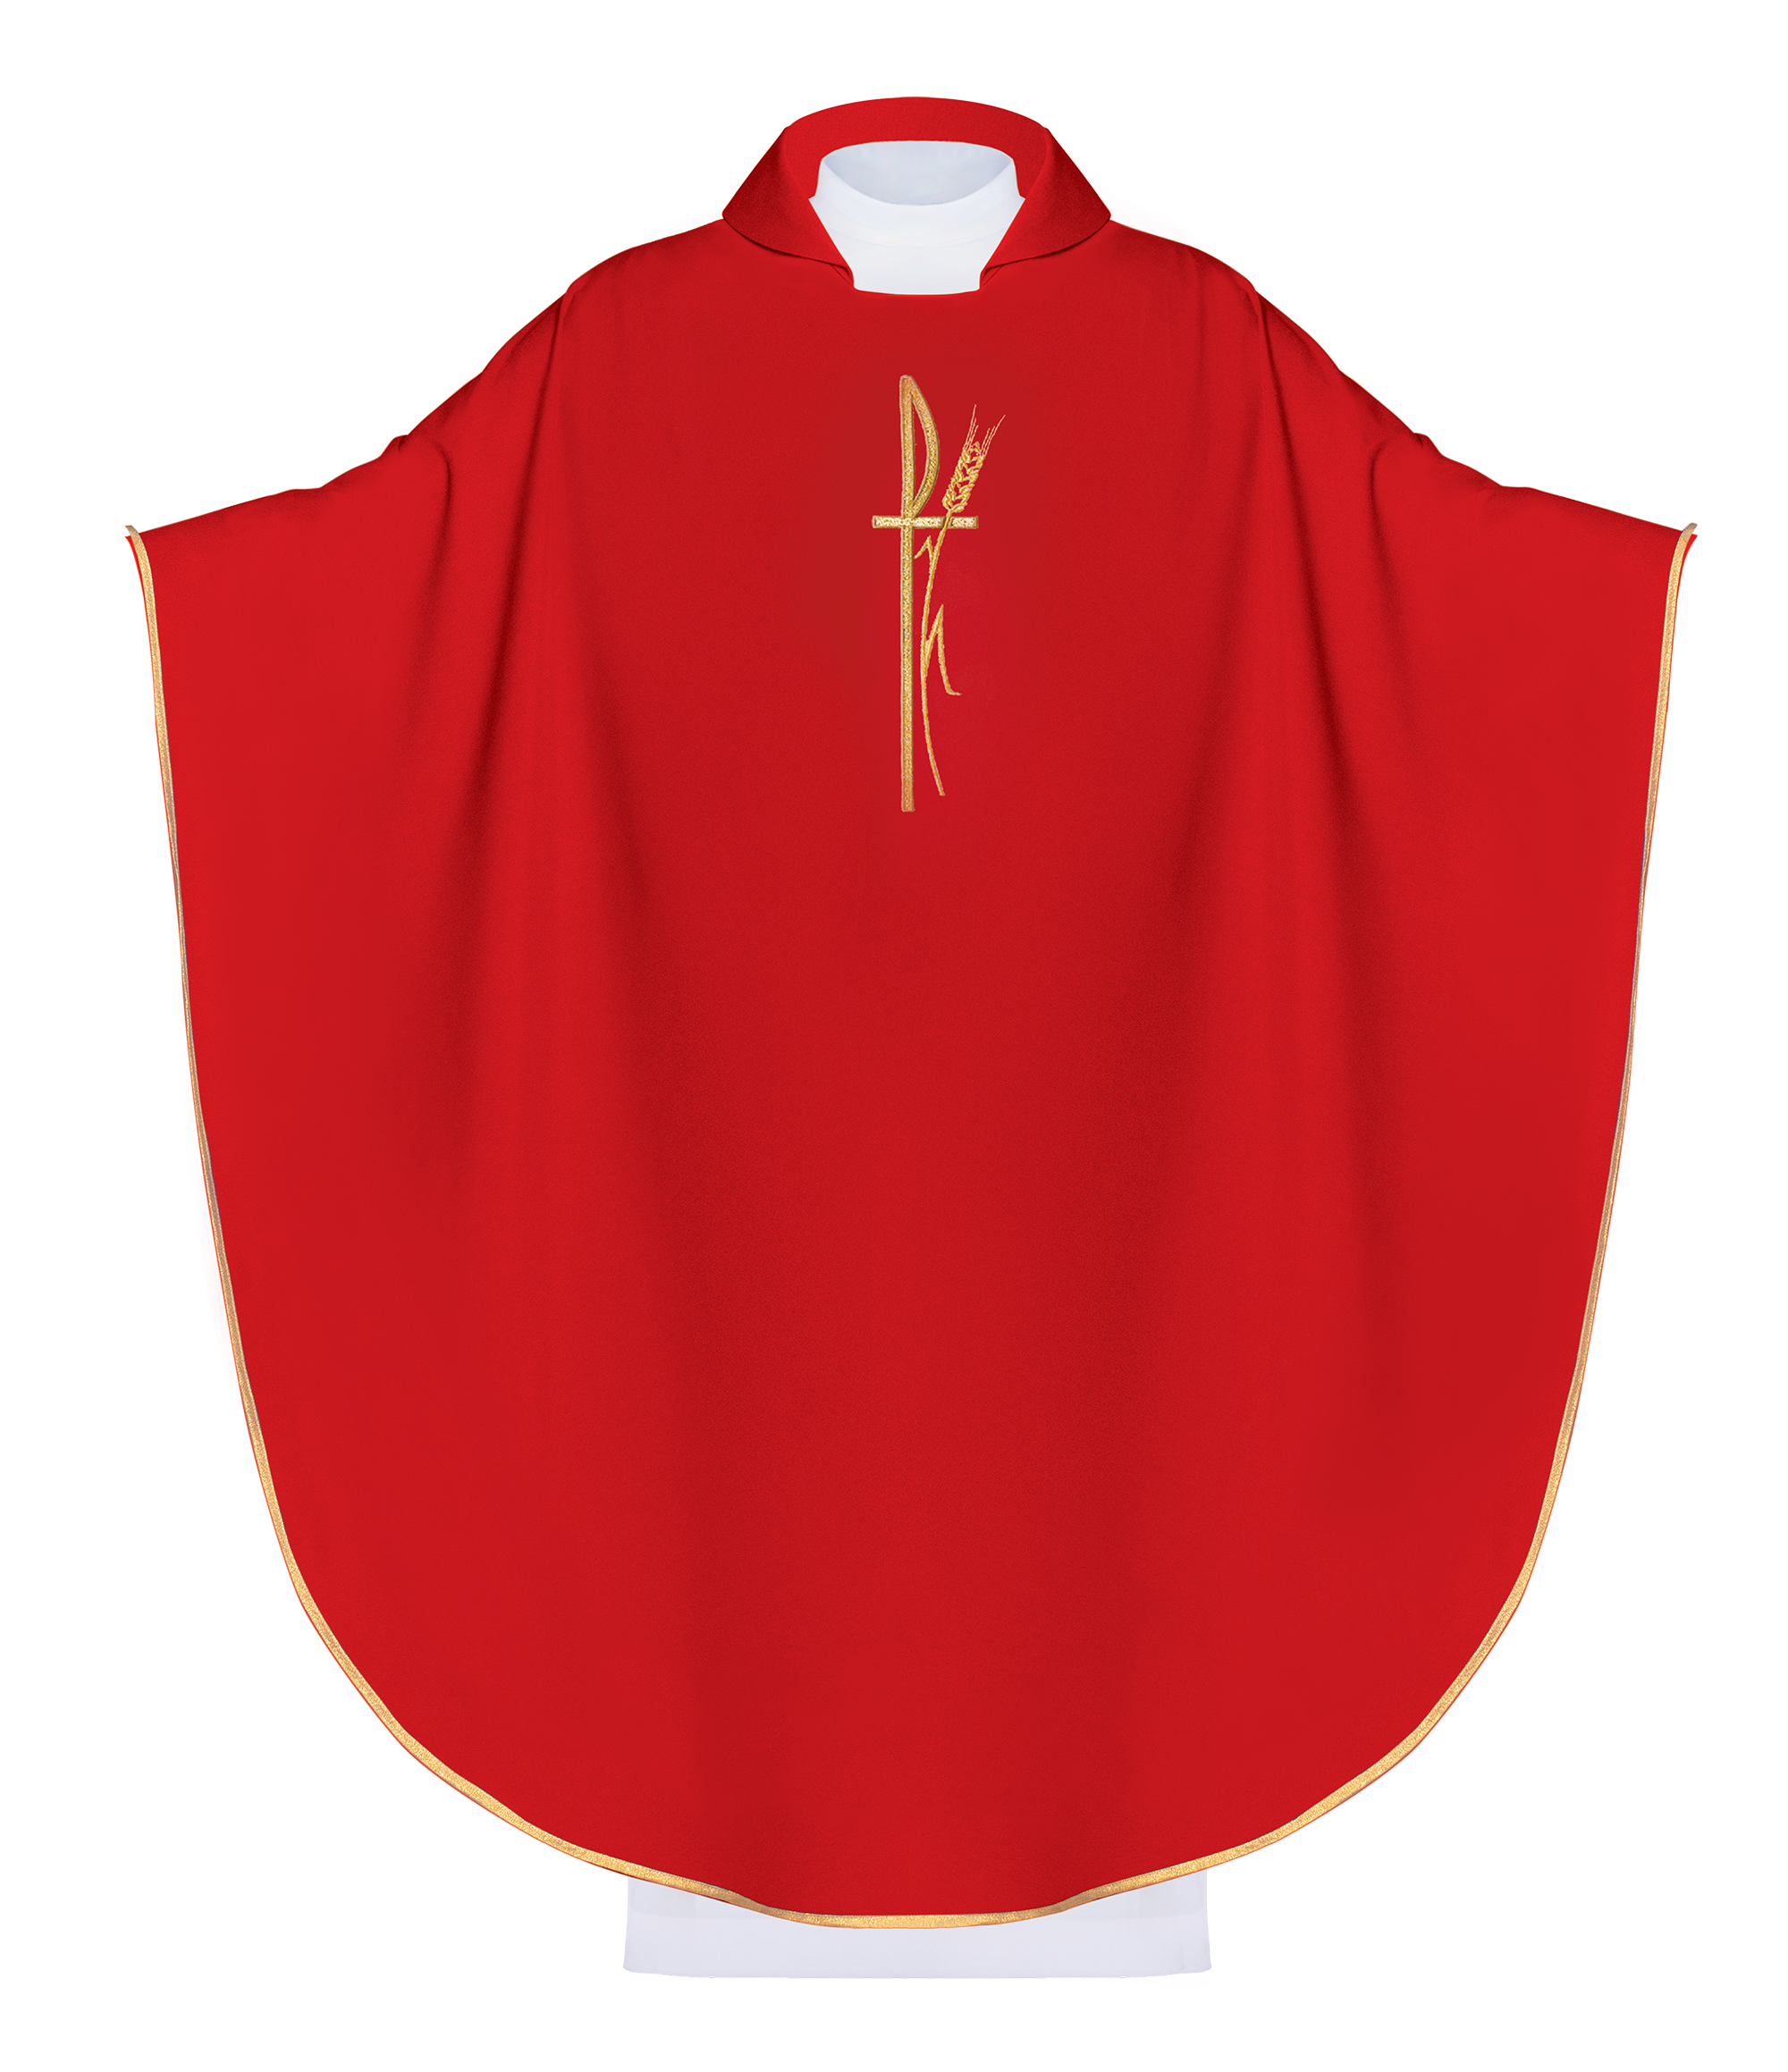 Czerwony ornat liturgiczny z szerokim kołnierzem i delikatnie haftowanym krzyżem